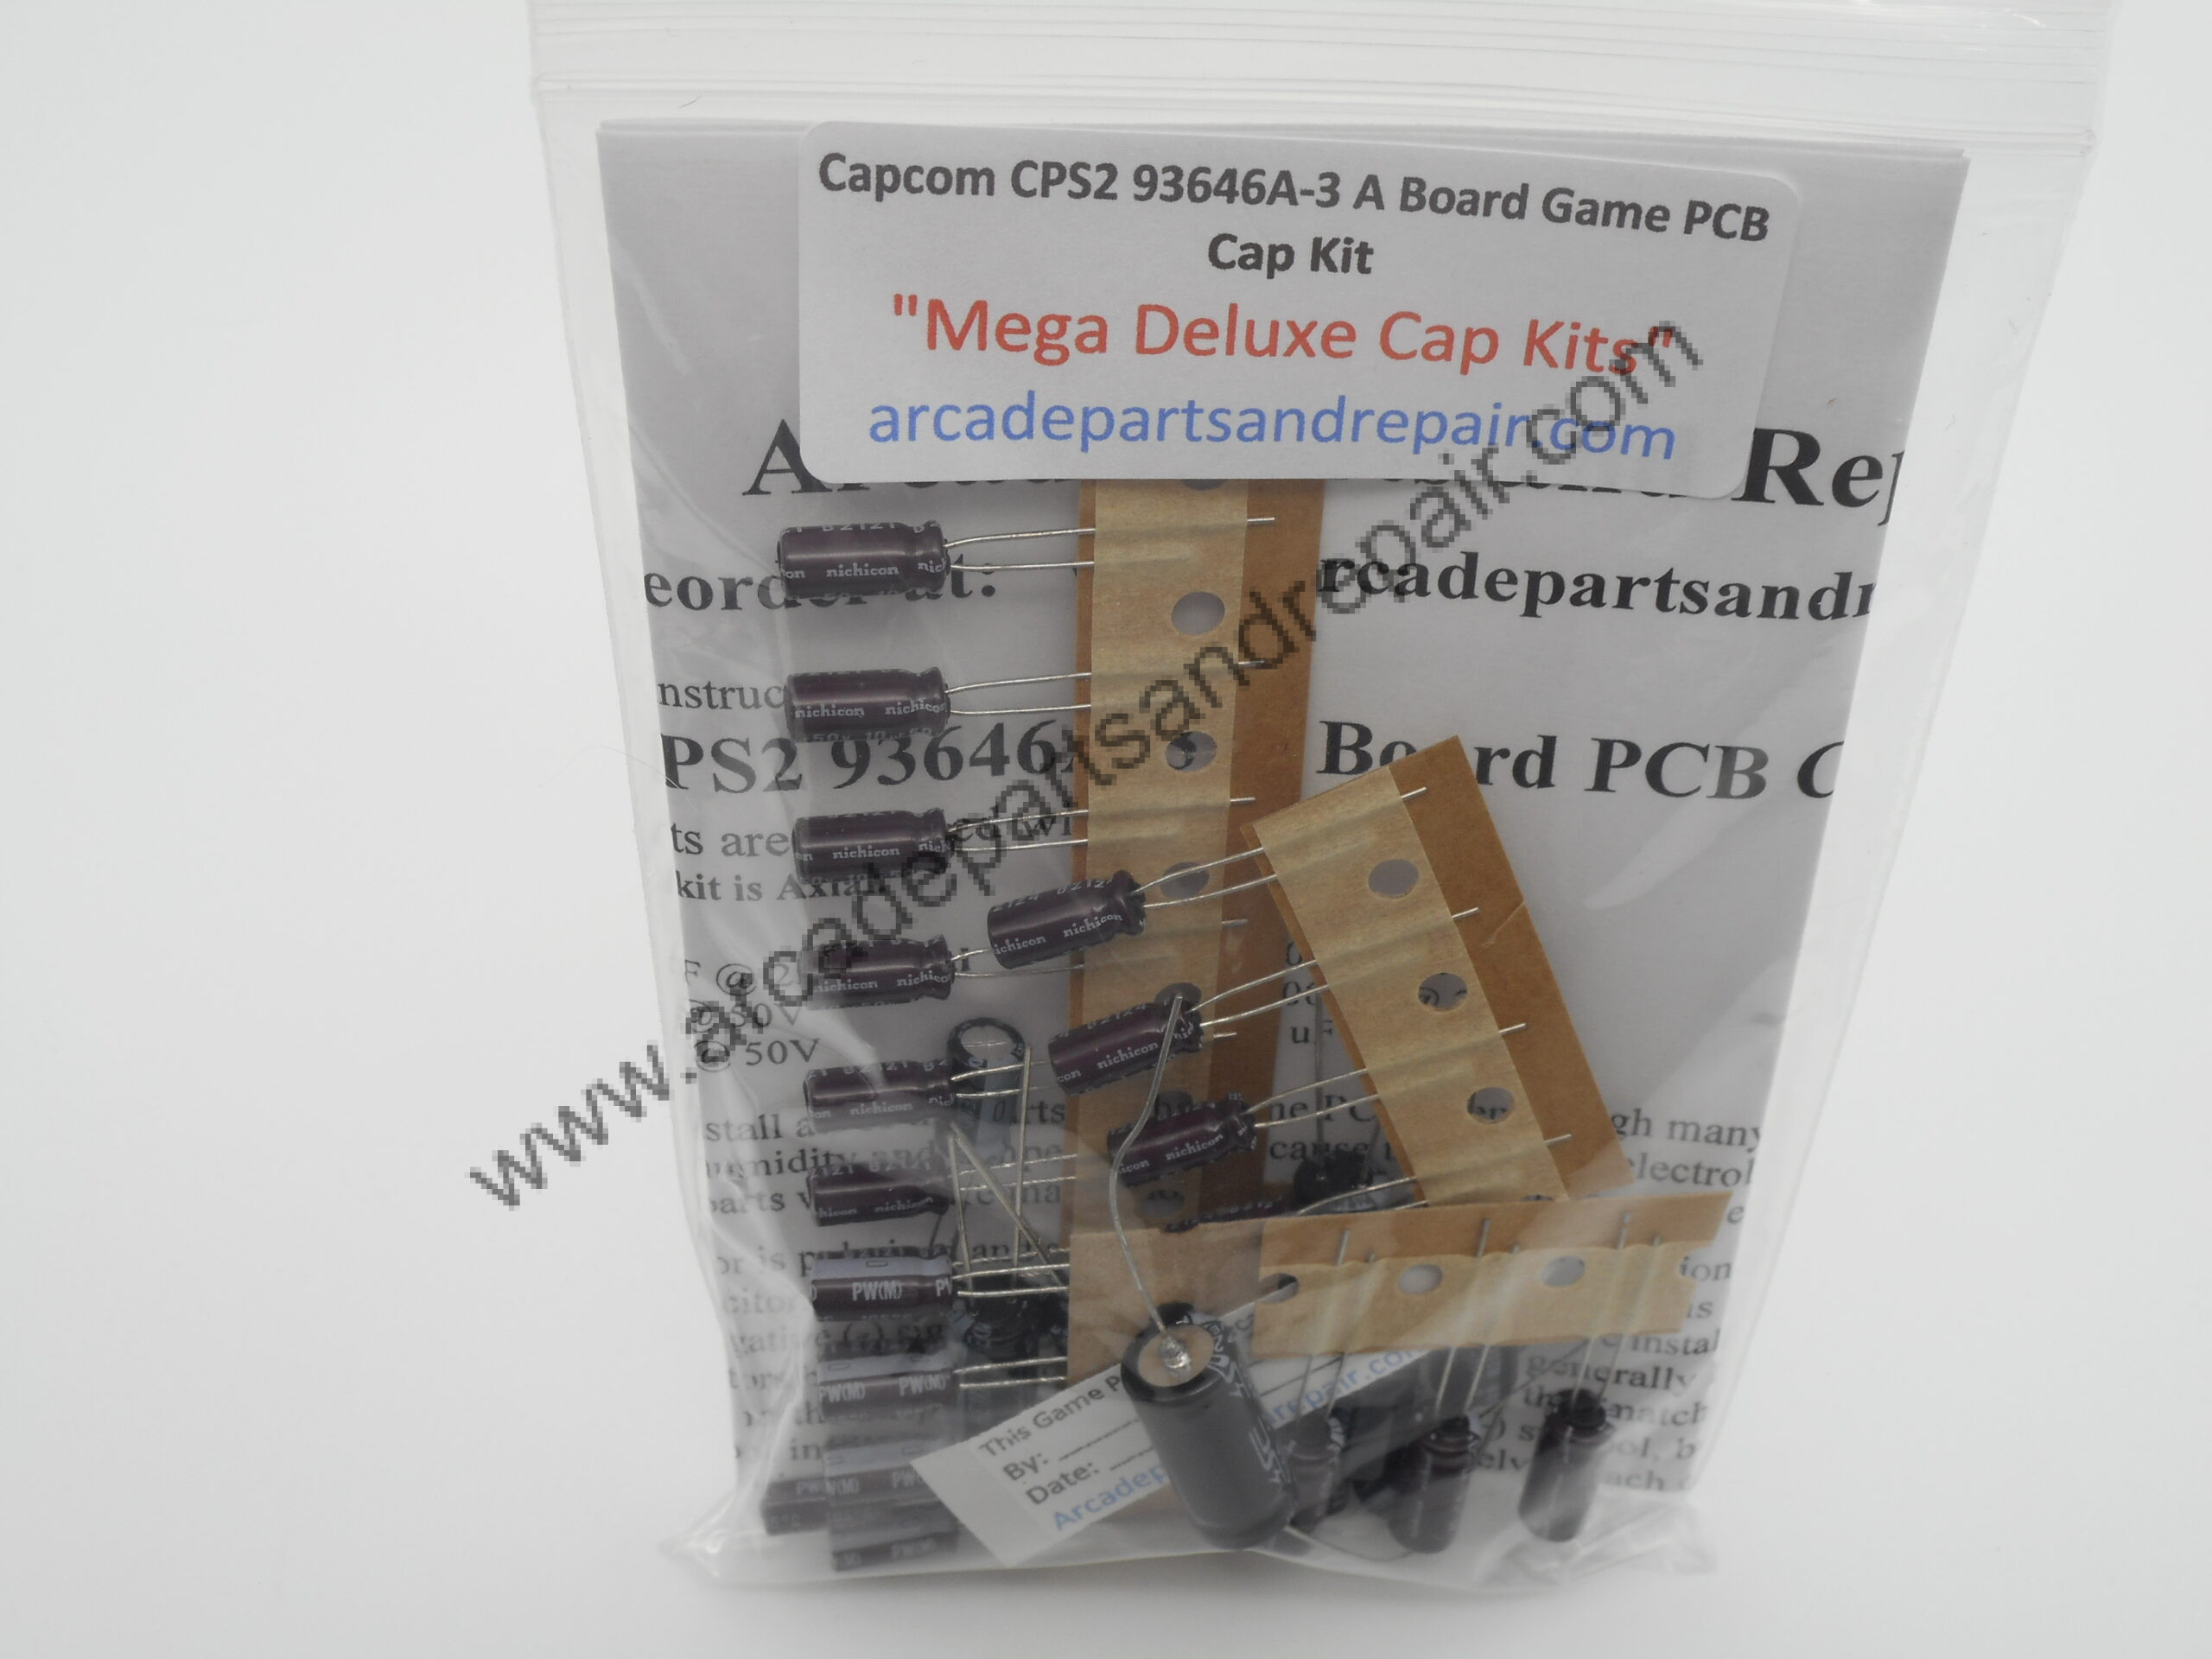 Capcom CPS-2 93646A-3 A Board PCB 105C Cap Kit